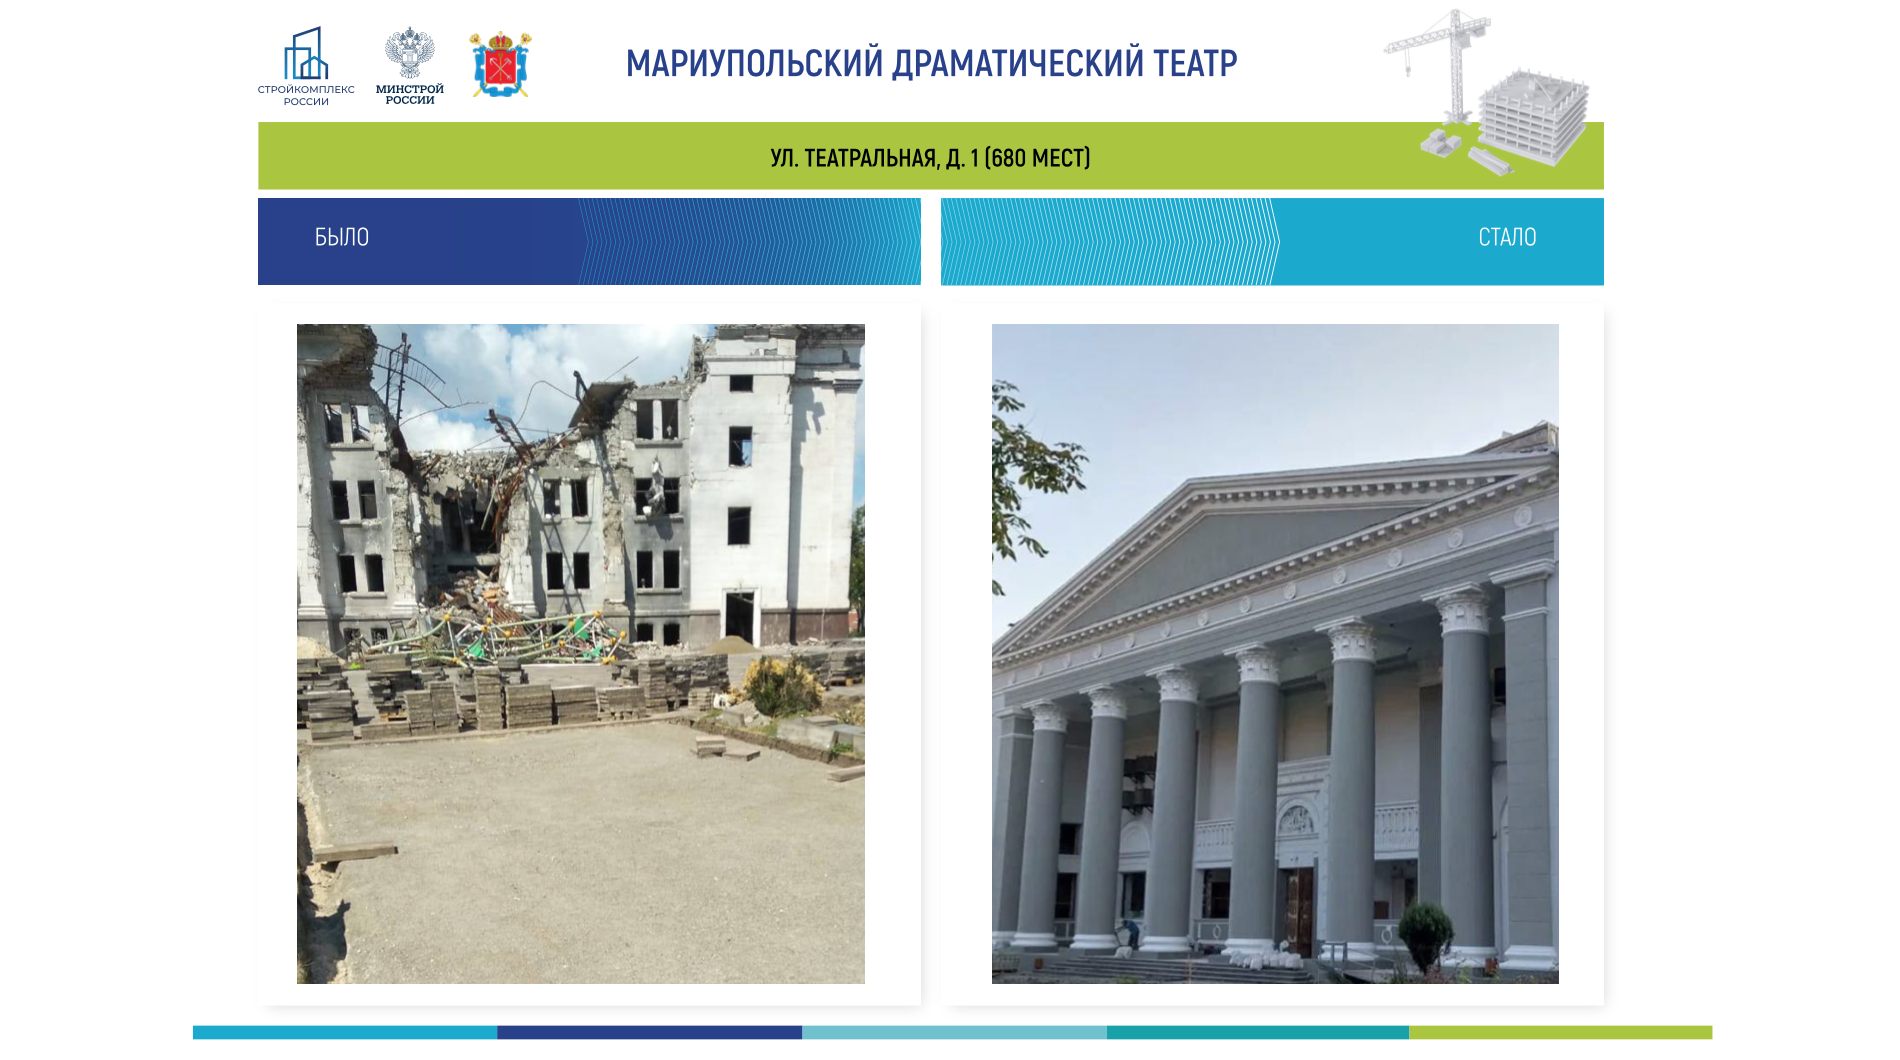 Результат восстановления Мариупольского драматического театра. Фото © Telegram / Марат Хуснуллин